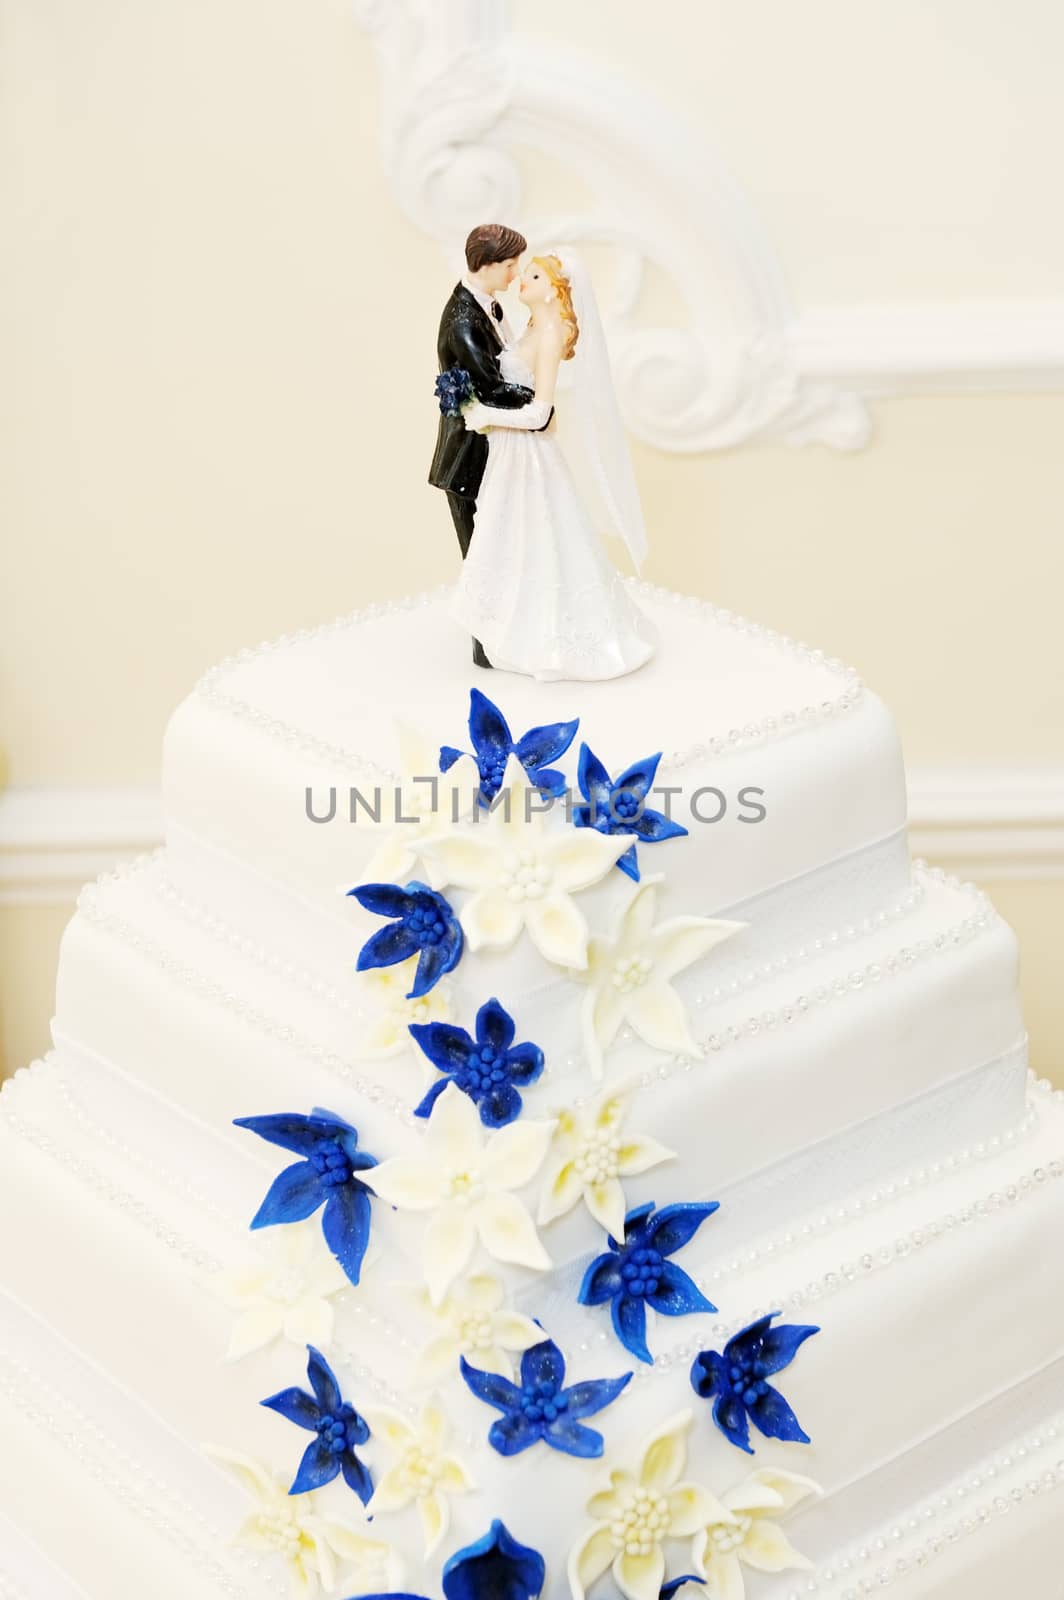 Wedding cake decoration by kmwphotography